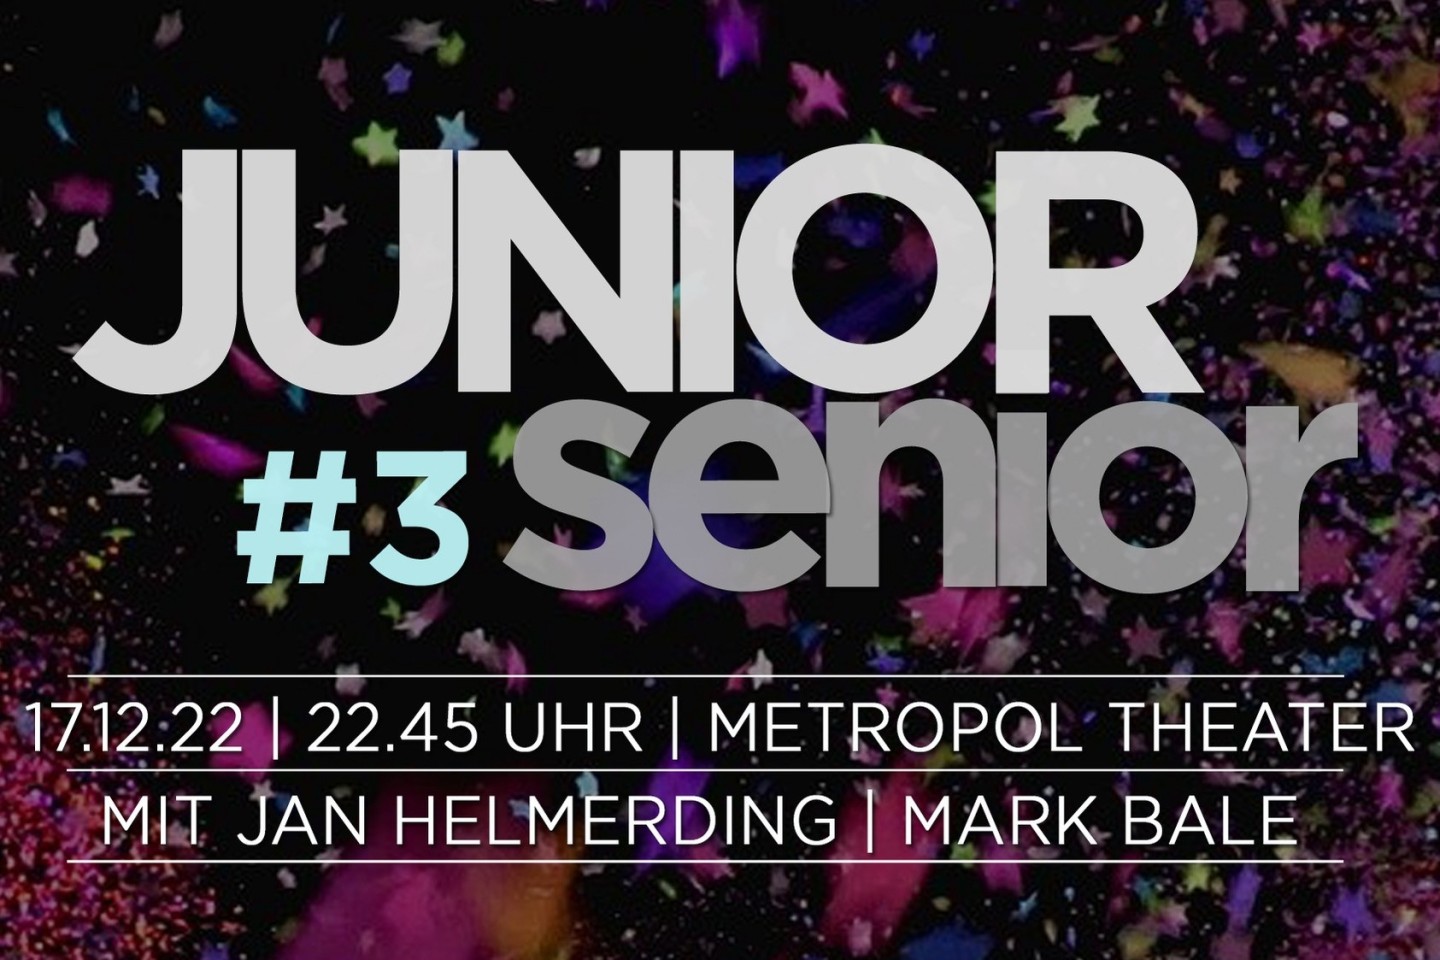 JuniorSenior Party